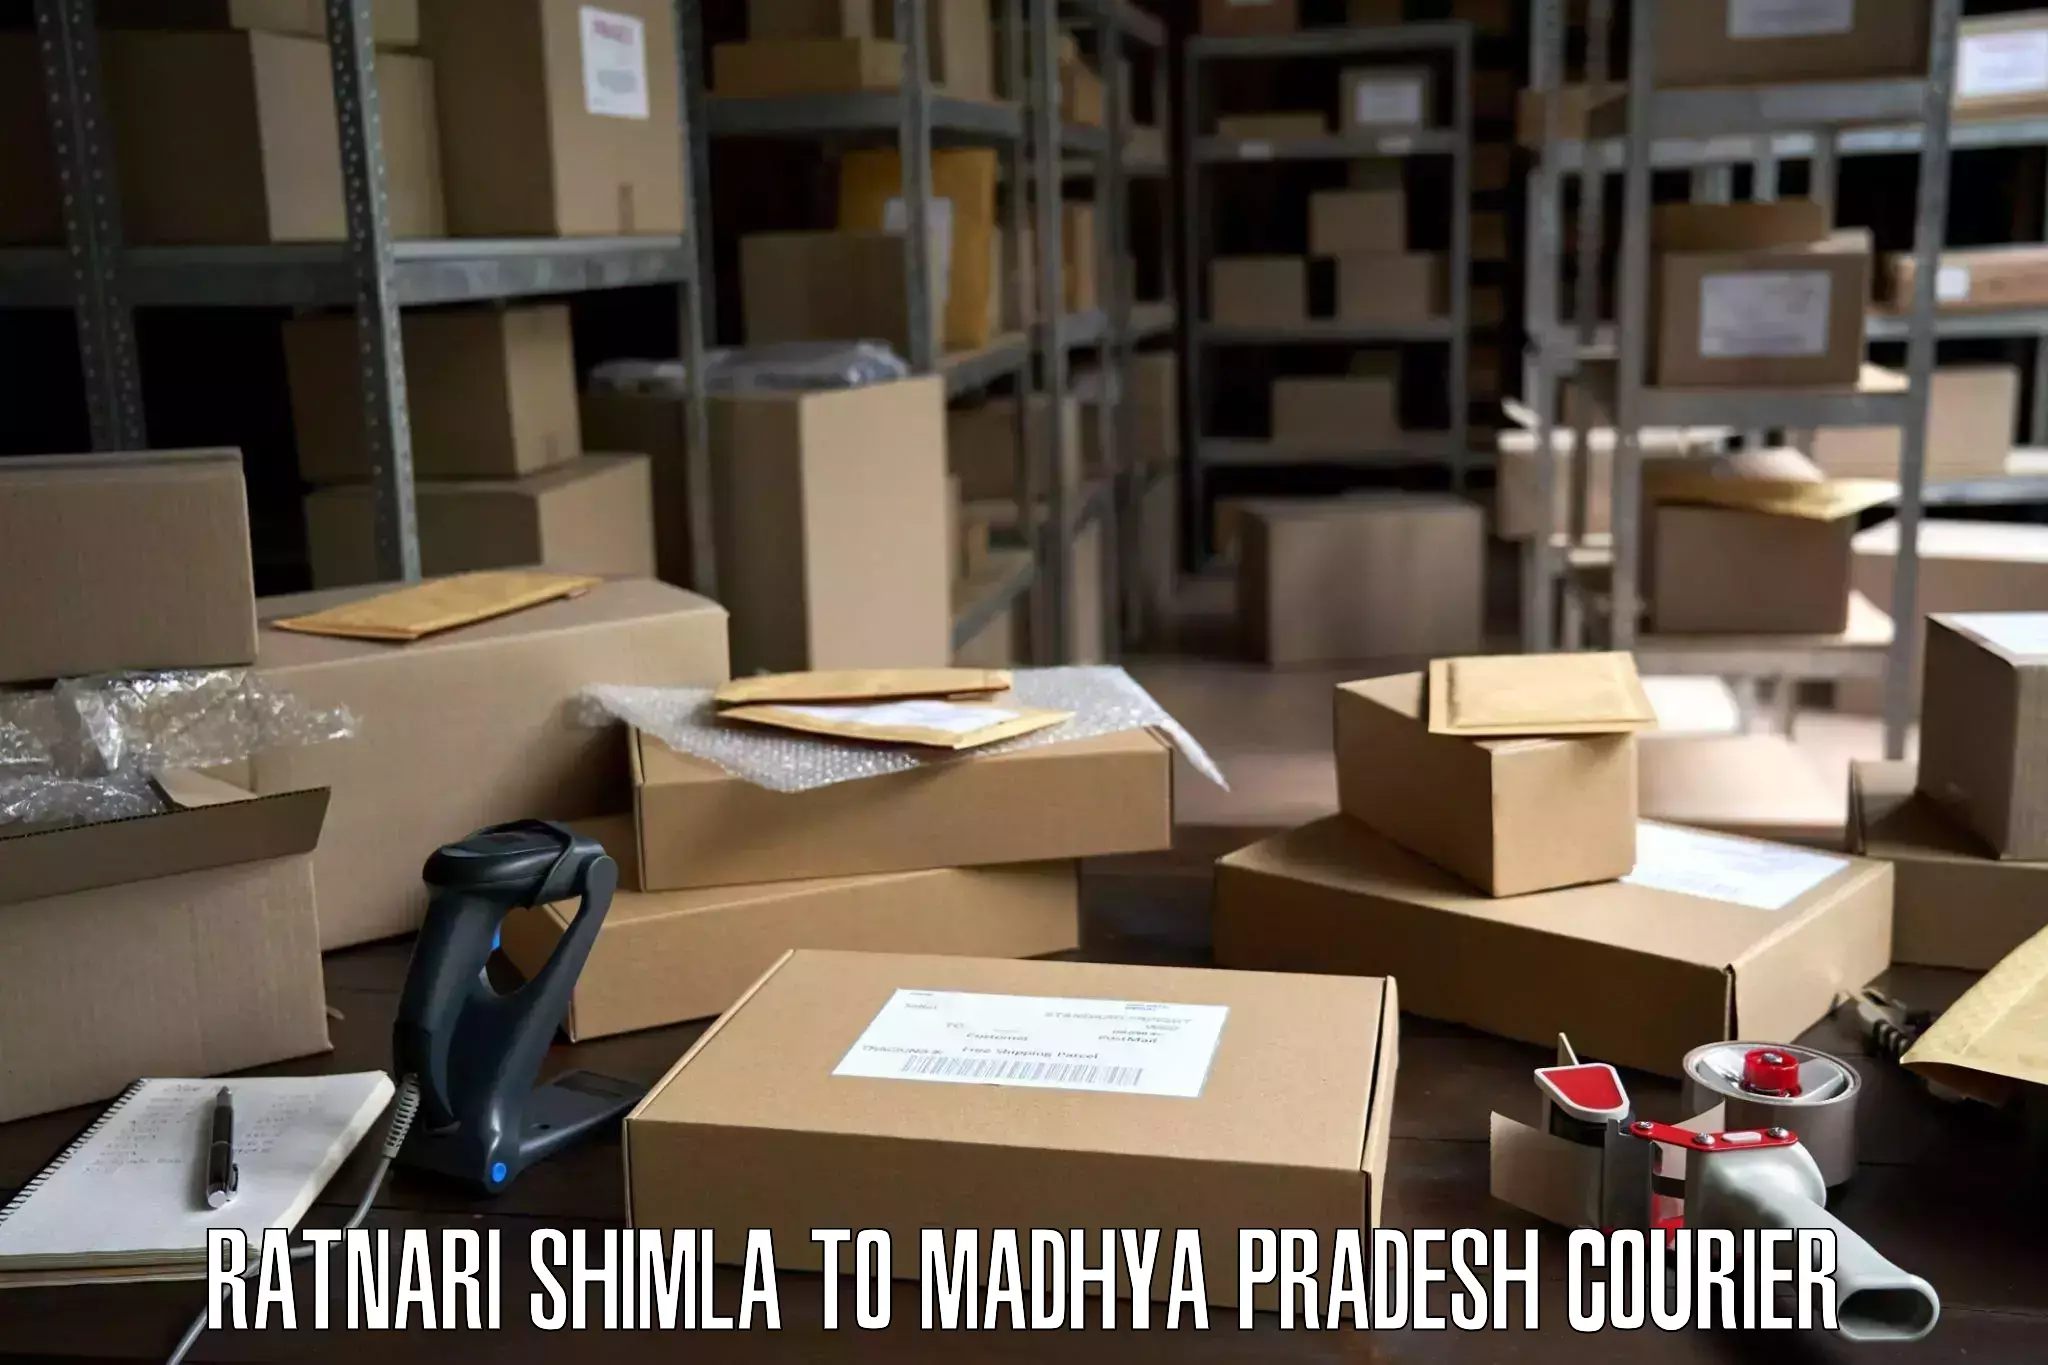 Skilled furniture movers Ratnari Shimla to IIIT Bhopal